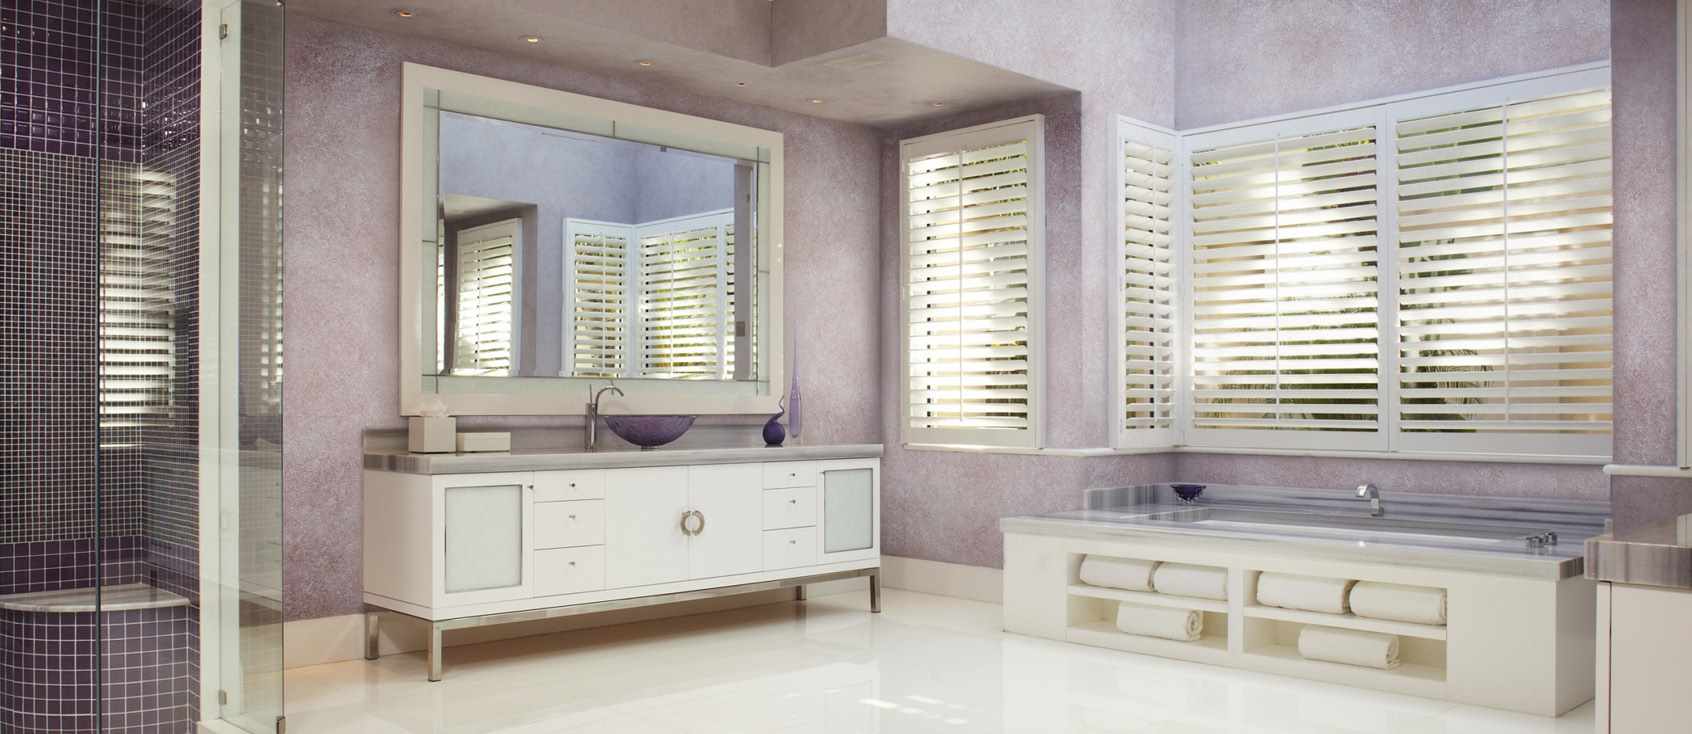 myšlienka použitia neobvyklých dekoratívnych omietok v interiéri kúpeľne